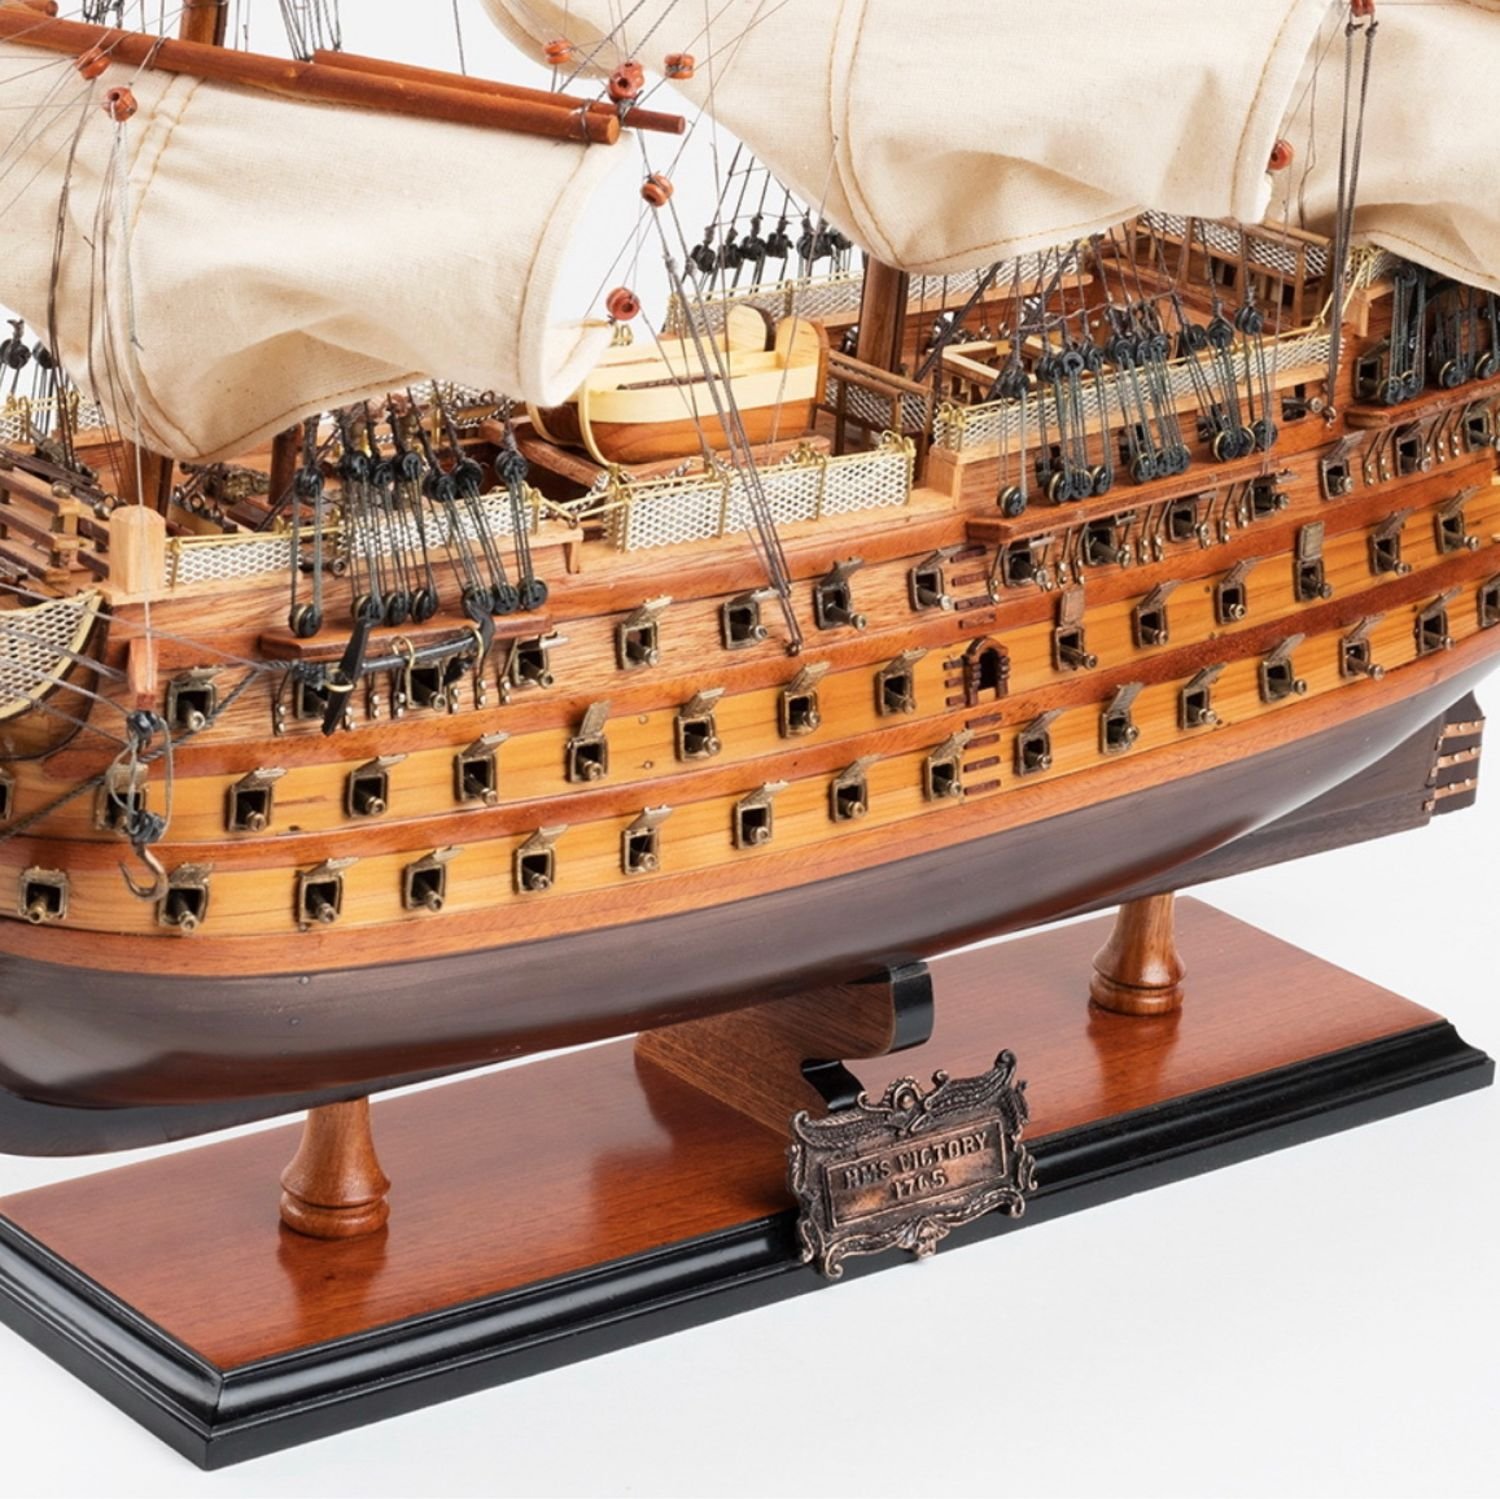 Купить собранную модель. Деревянная модель HMS Victory. Модель корабля HMS Victory. Сборка деревянной модели корабля Виктори. HMS Victory zvezda.